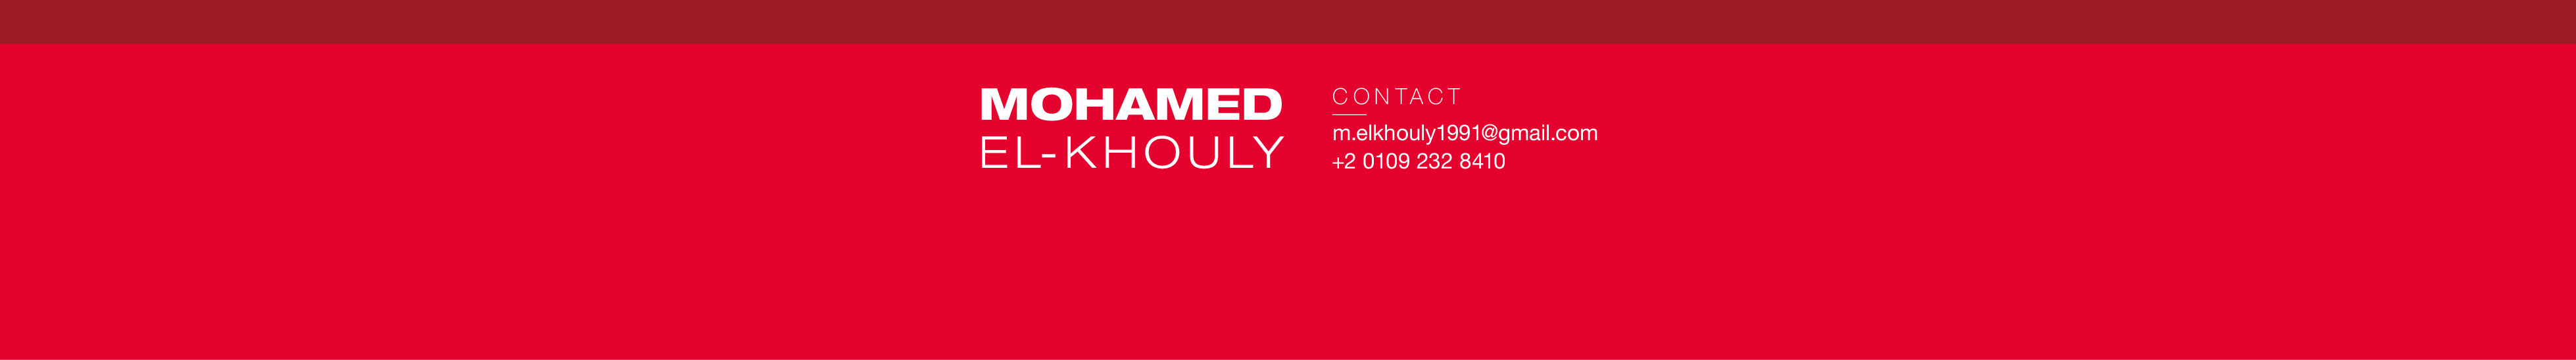 Mohamed Elkhoulys profilbanner